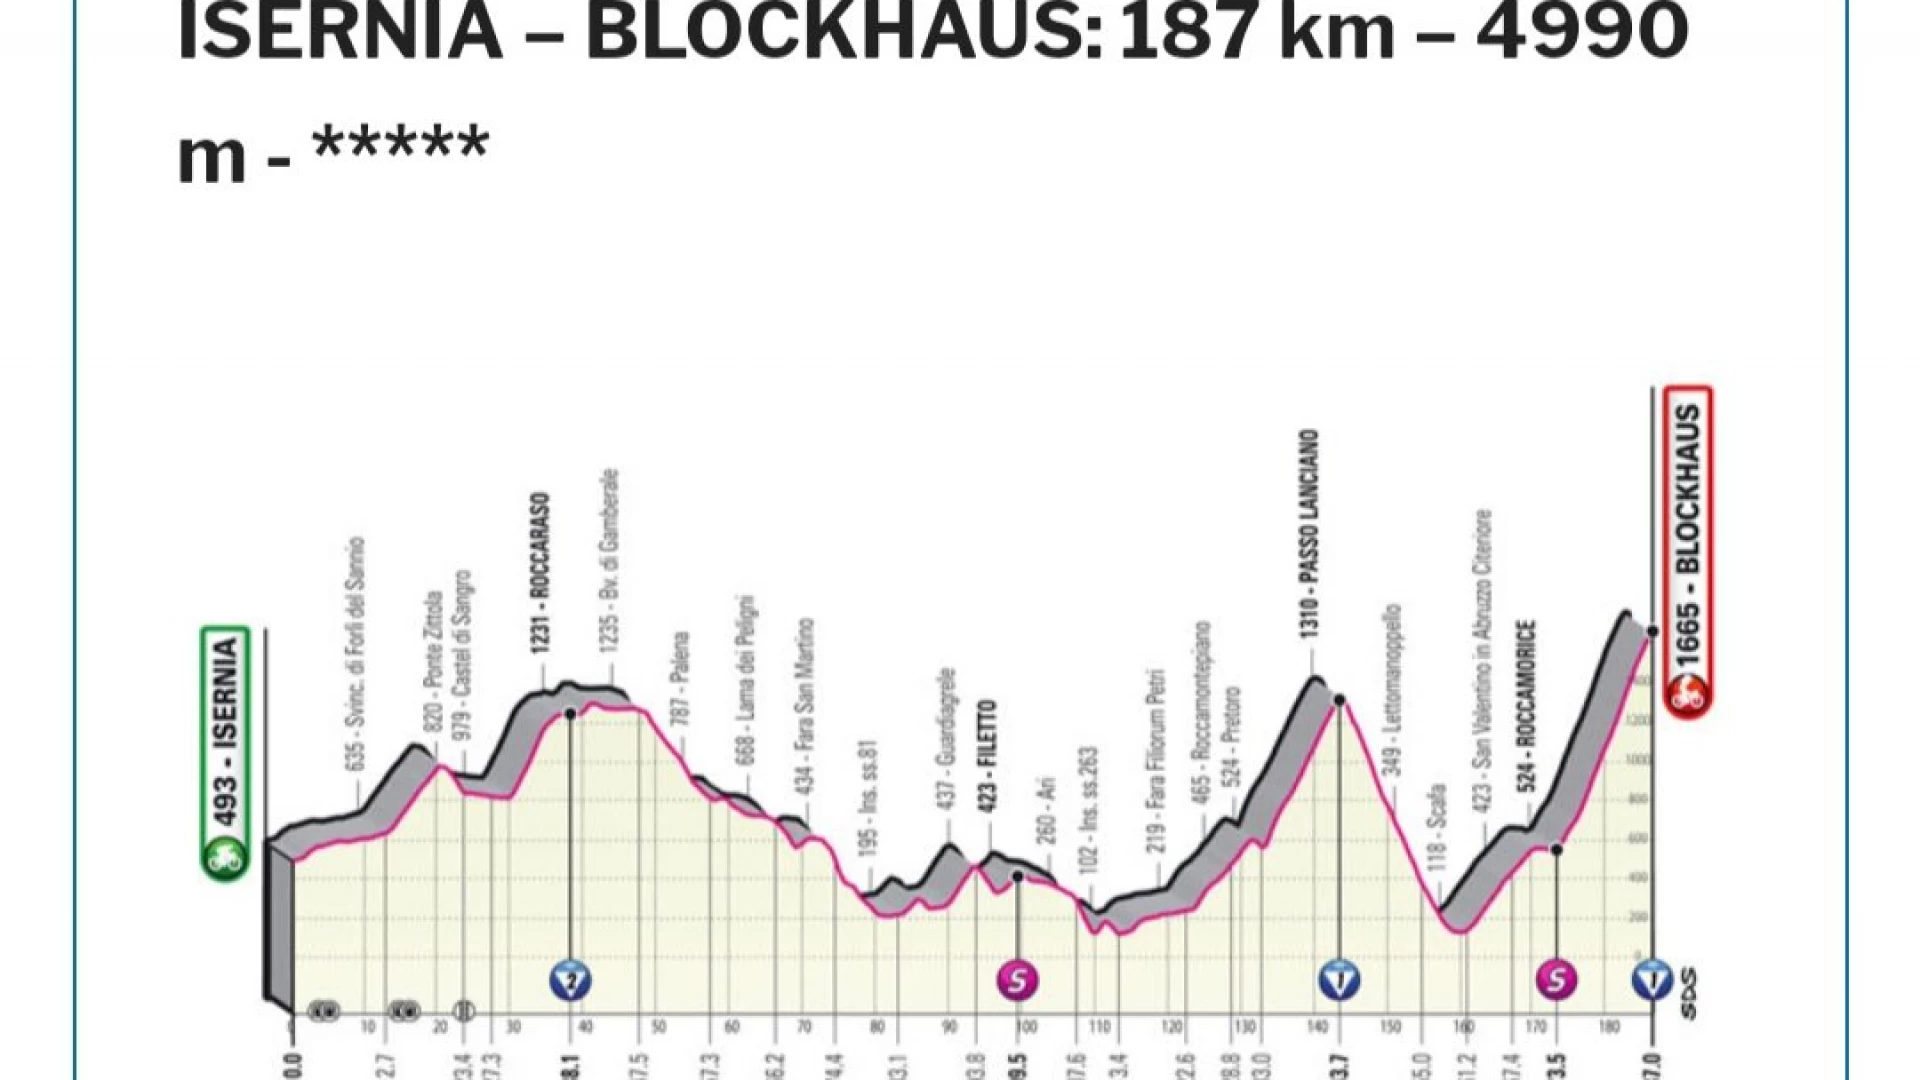 La sesta tappa del Giro d'Italia partirà da Isernia. Arrivo in Abruzzo  fino al Blockhaus.